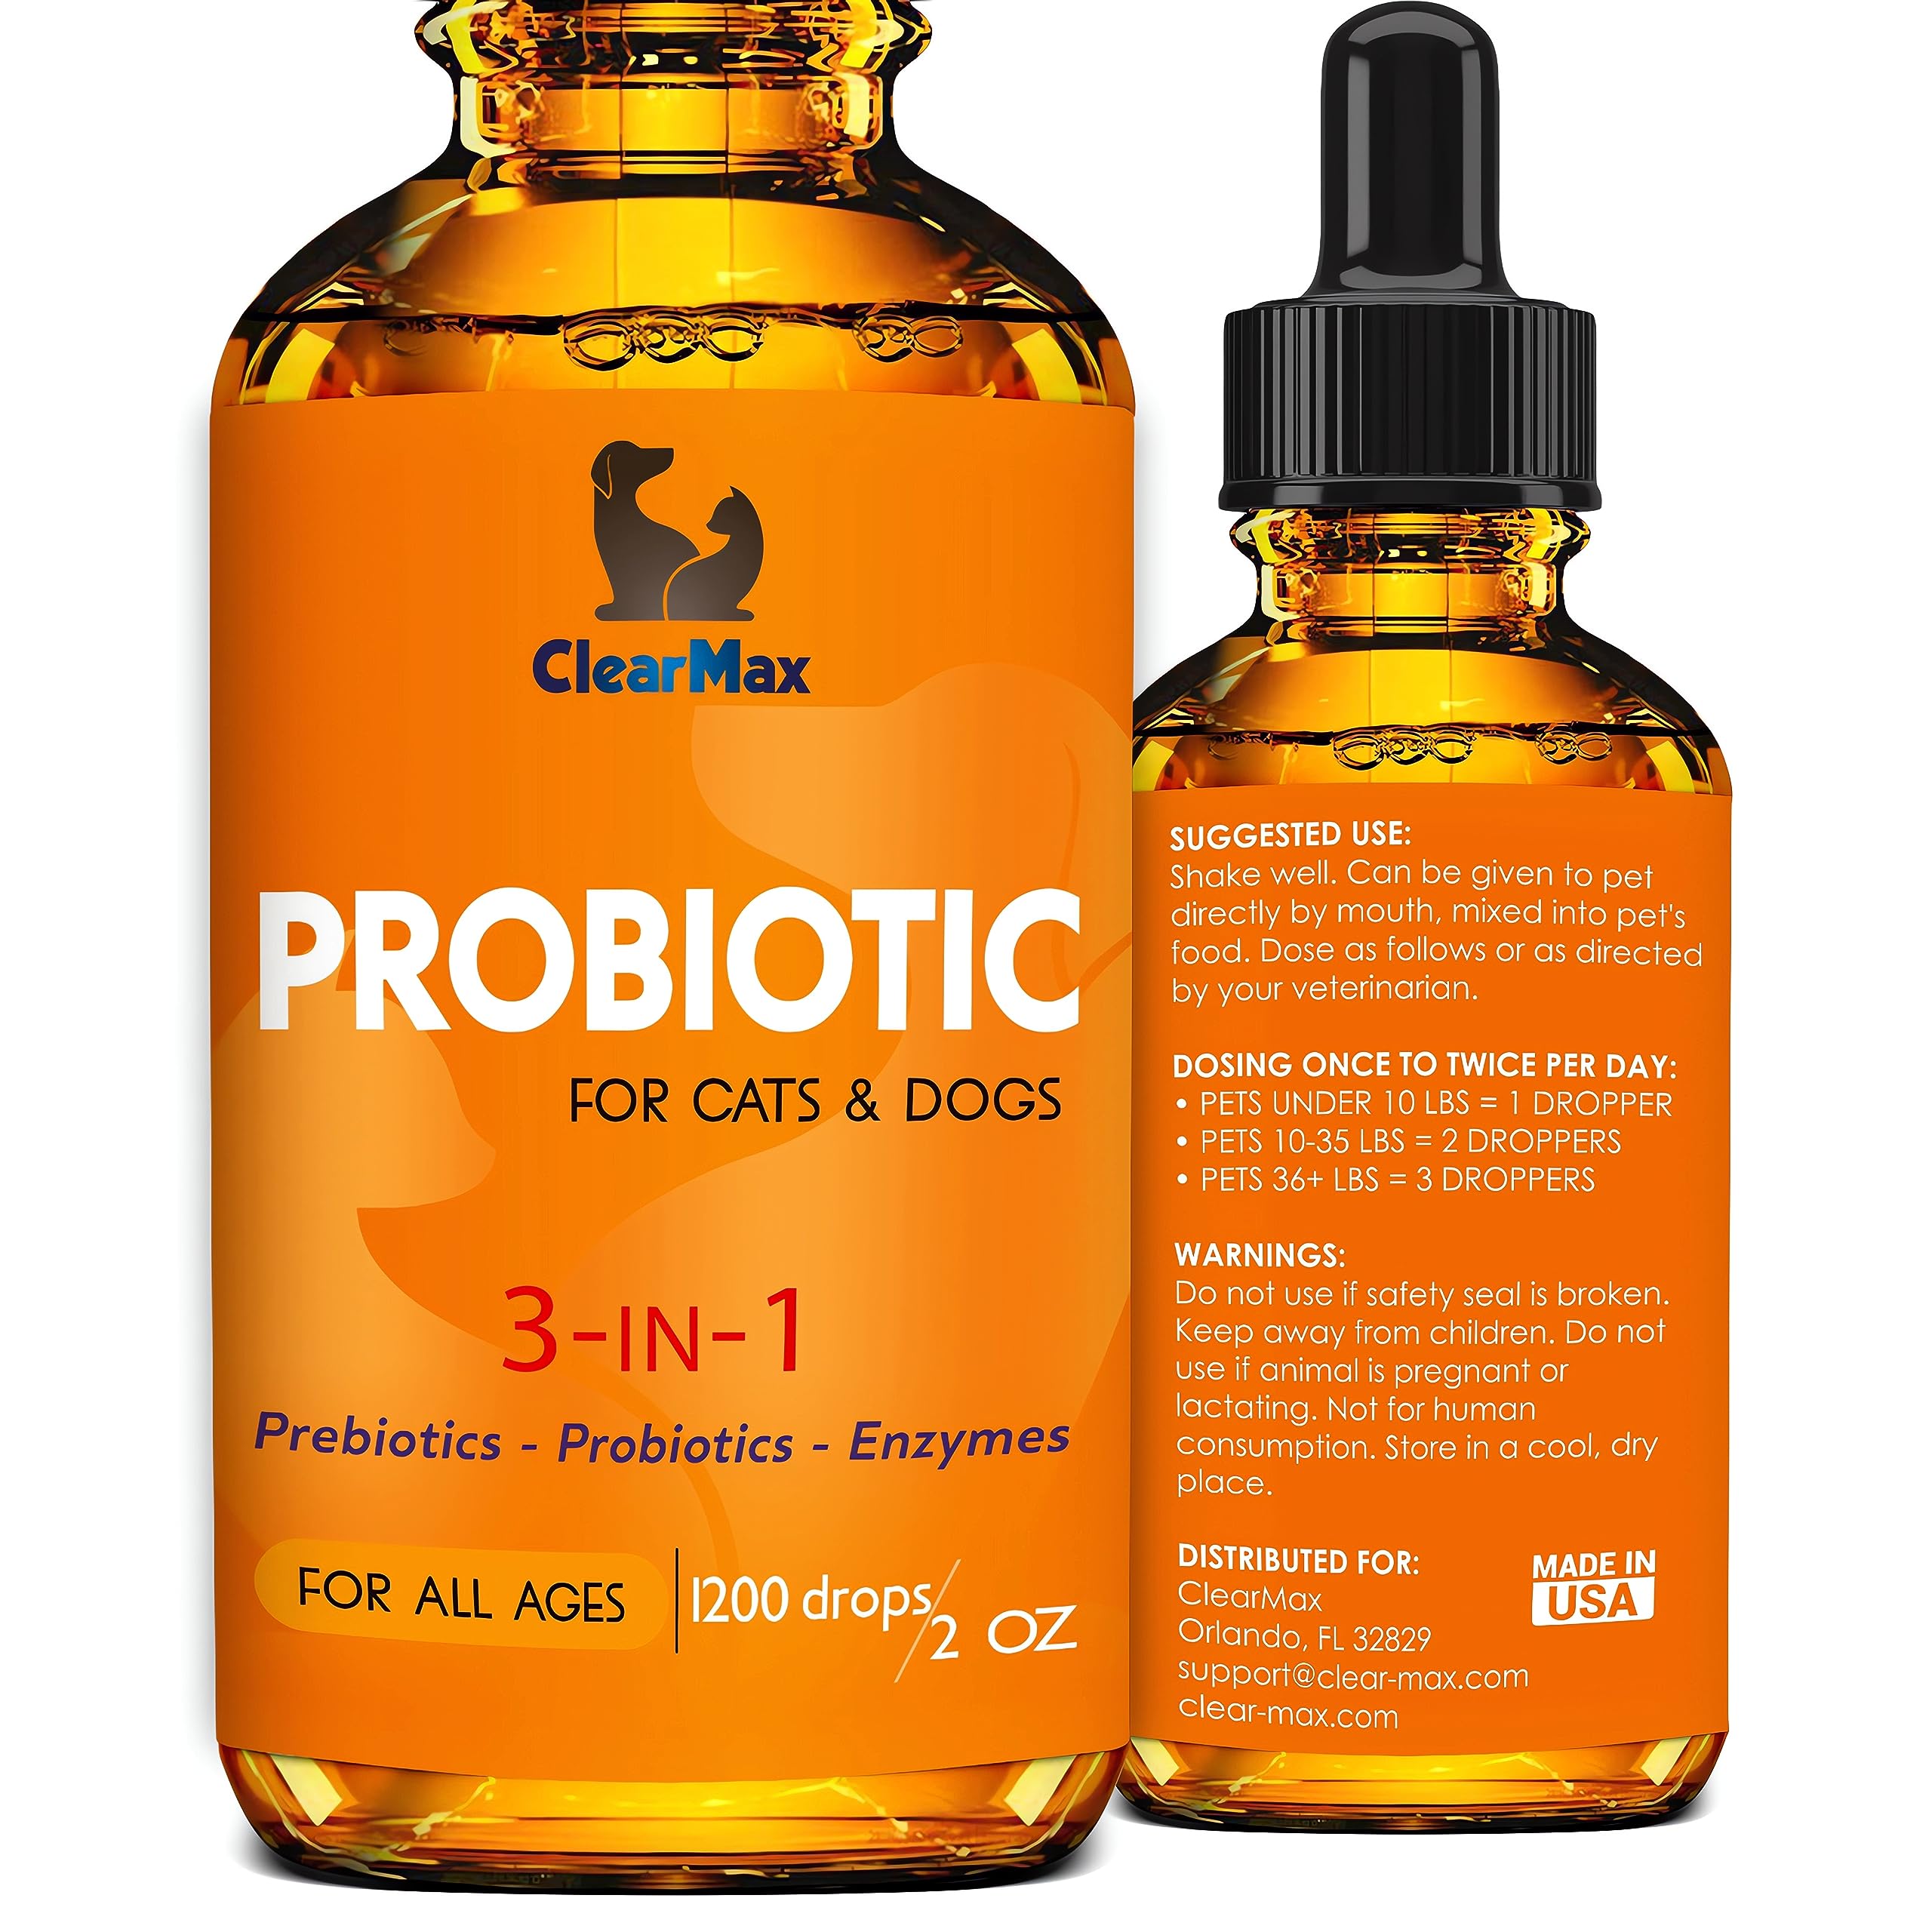 Clear Max Probiotics